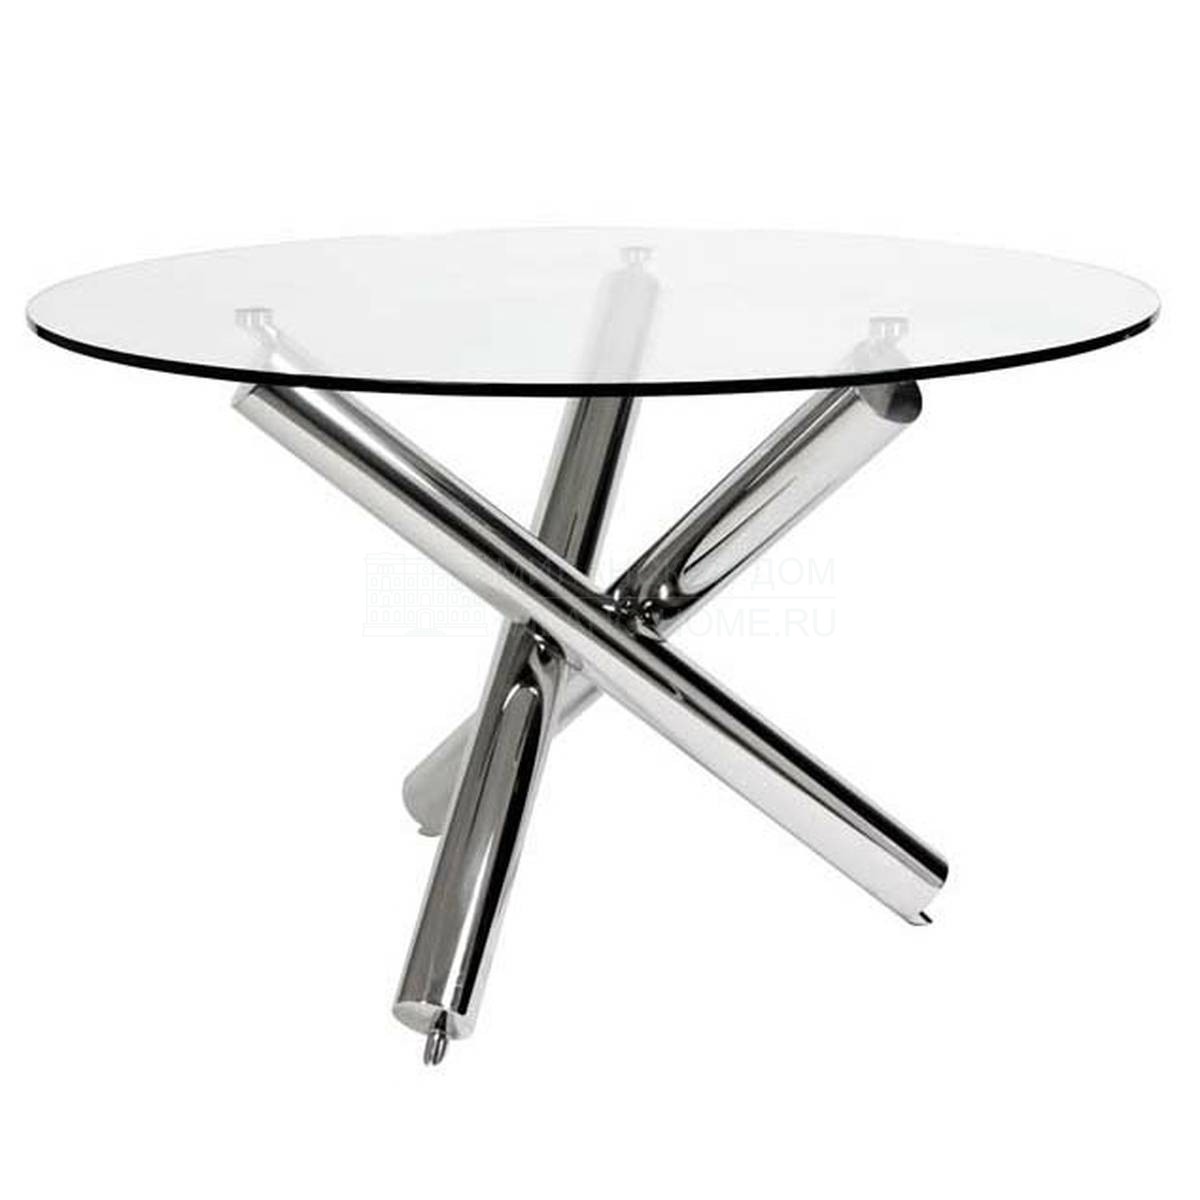 Круглый стол Corsica dining table из Голландии фабрики EICHHOLTZ